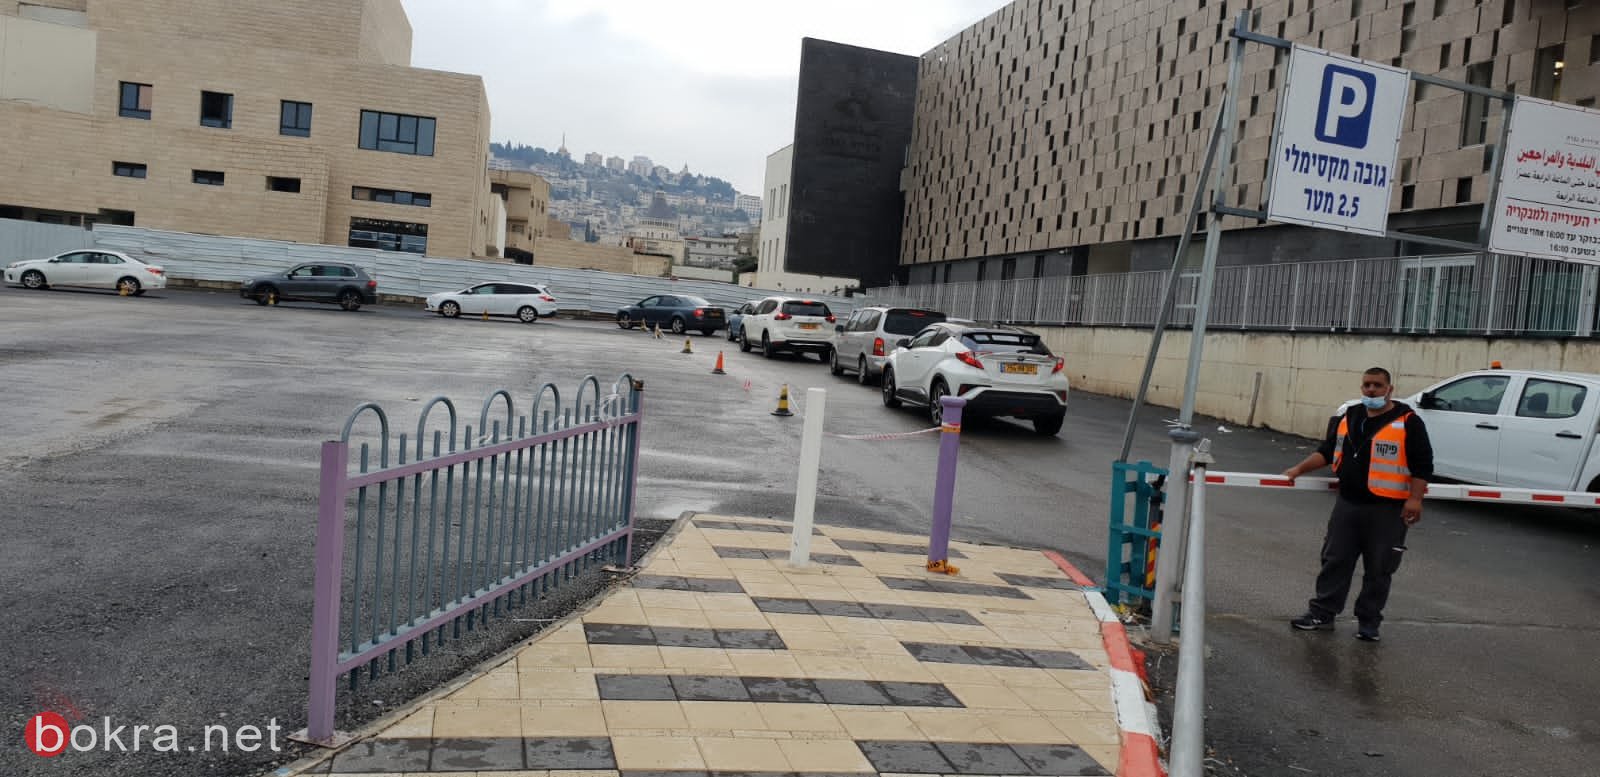 بلدية الناصرة: تعالوا لإجراء فحص الكورونا اليوم وغدًا السبت في ساحة البلدية-0